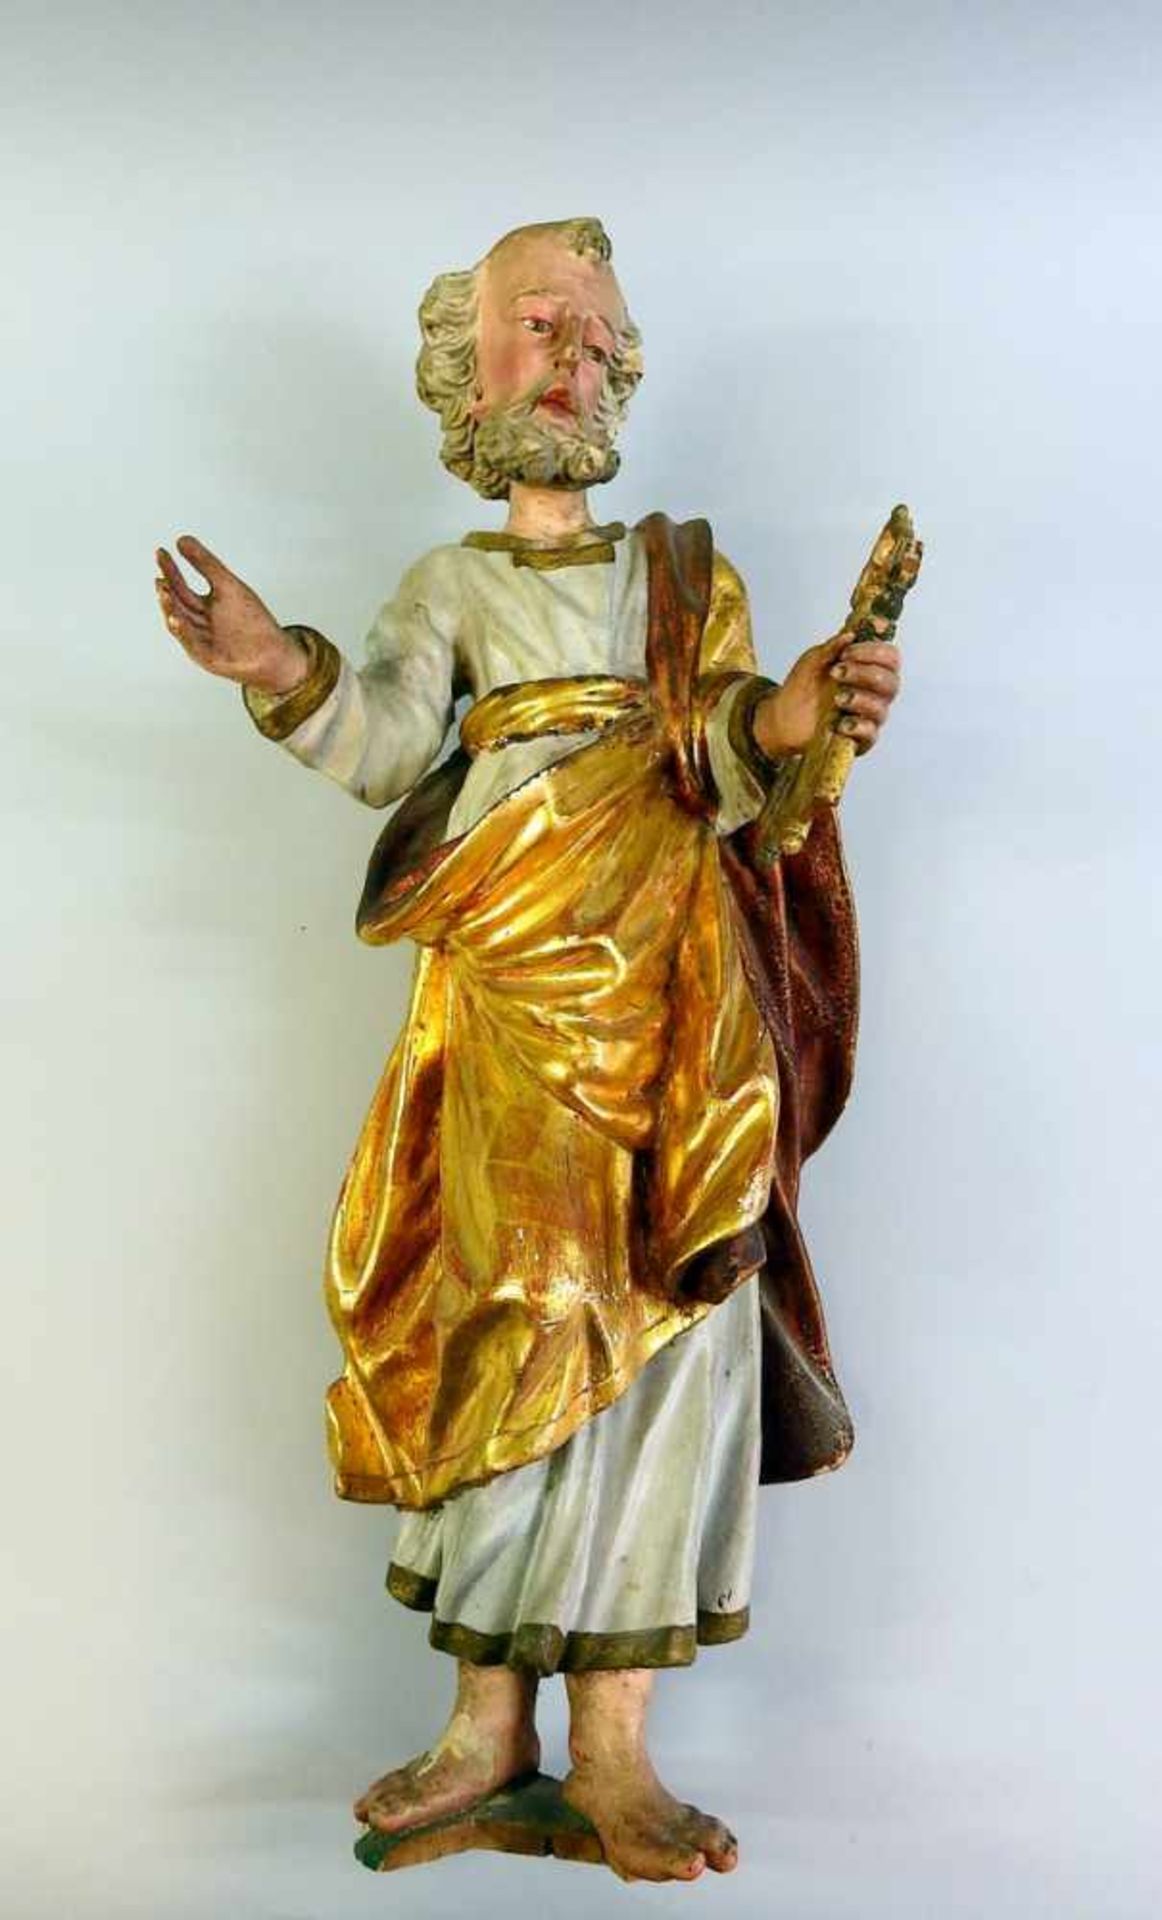 Heiliger Petrus Holz geschnitzt, gold und farbig gefasst. Fassung teils übergangen, Farbabplatzer,